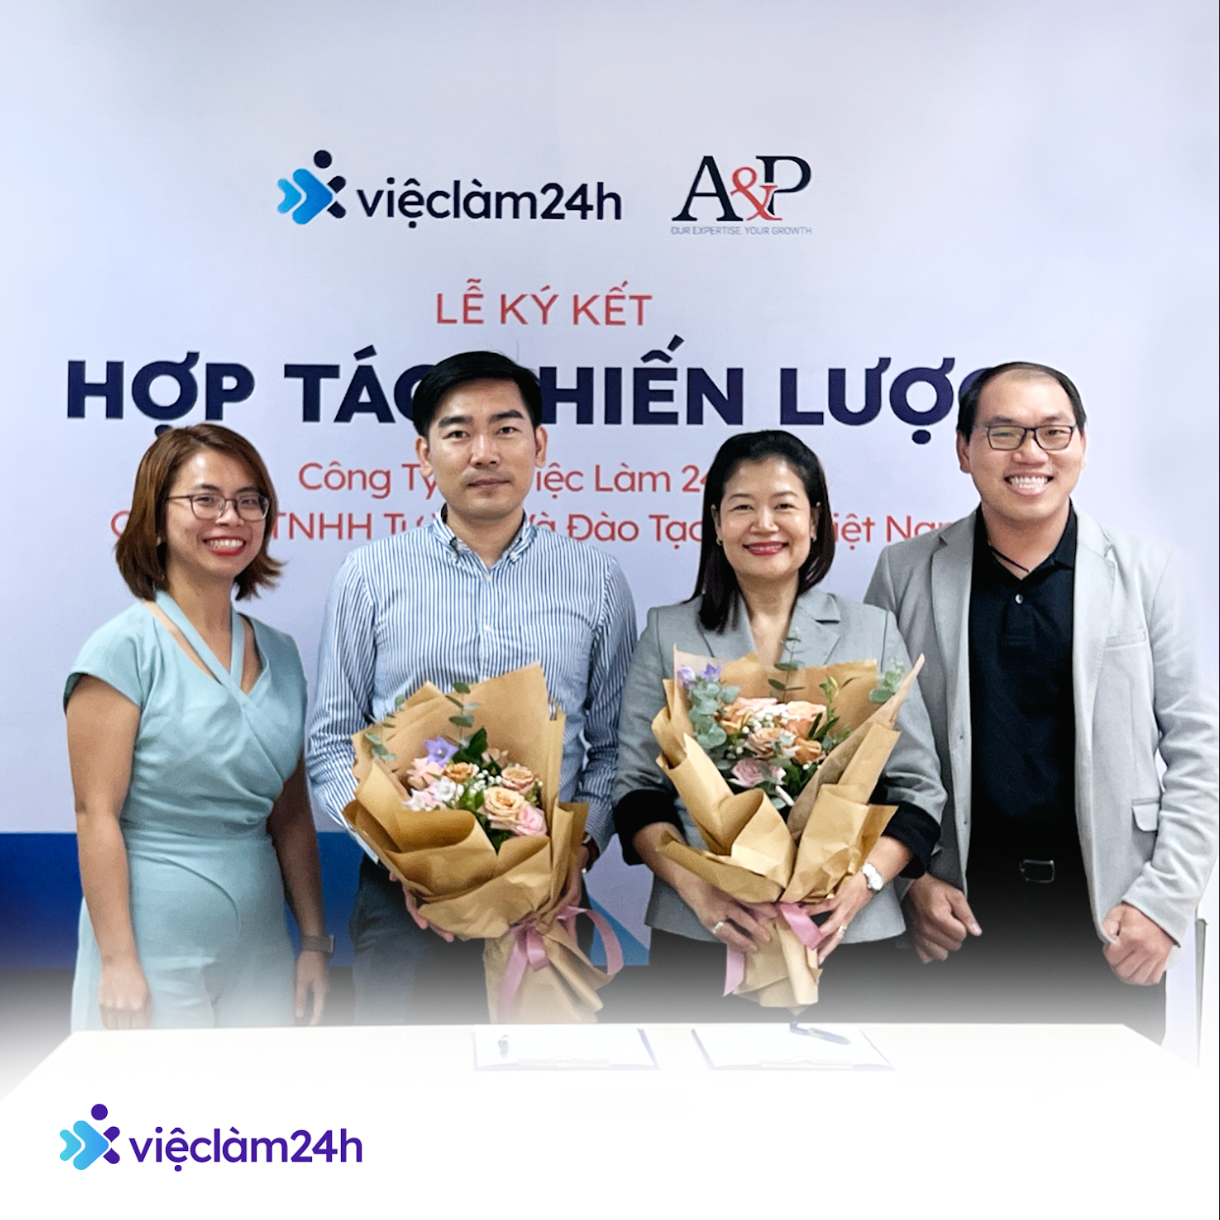 Việc làm 24h và A&P Việt Nam